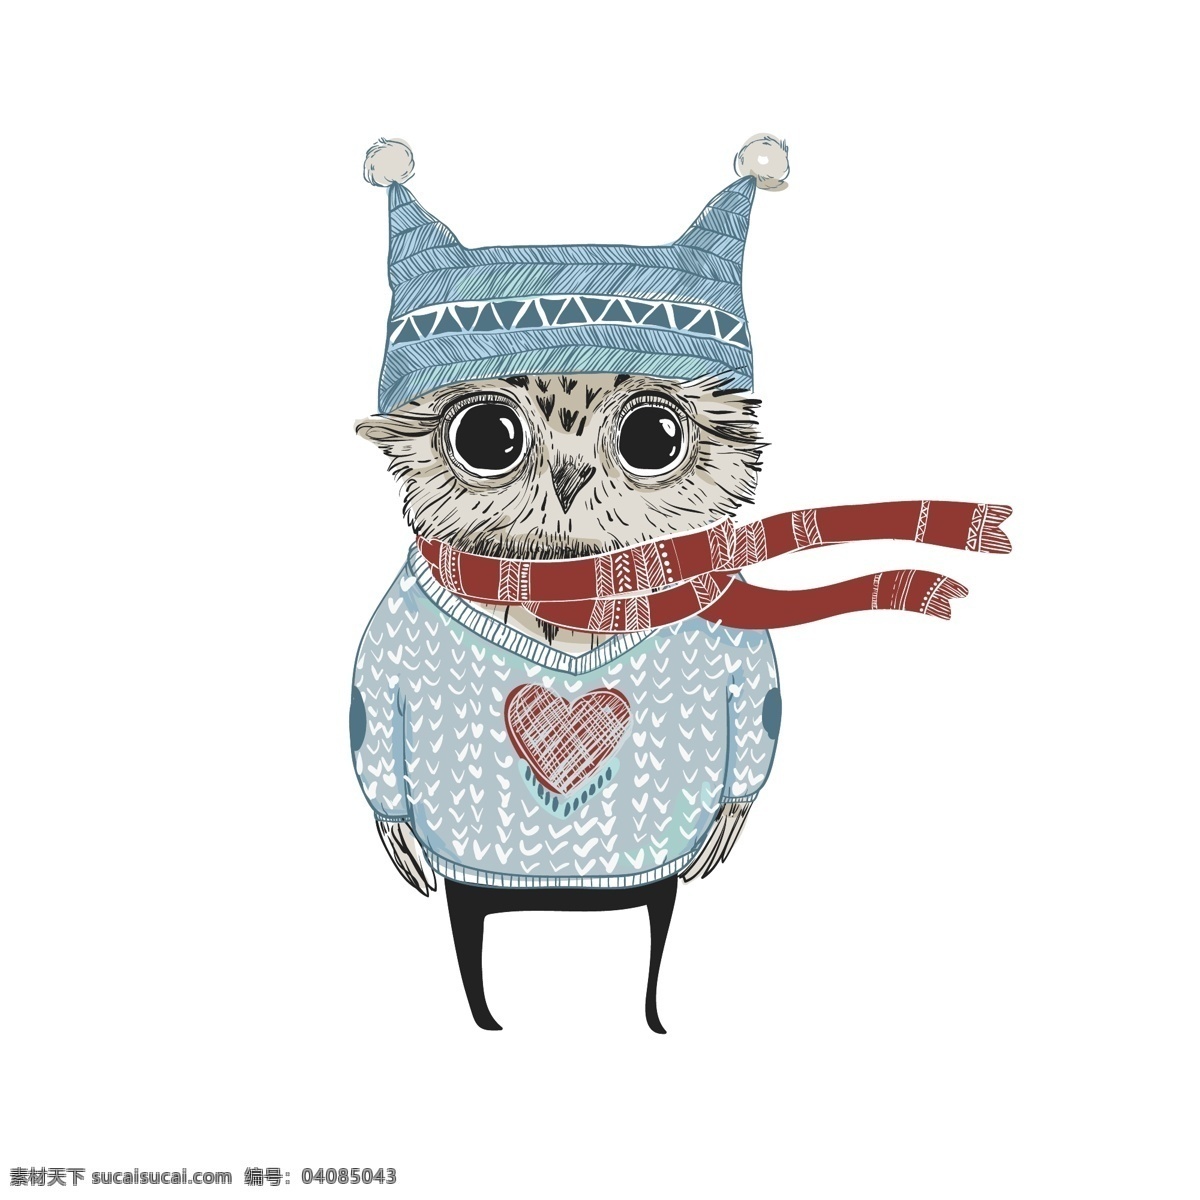 可爱猫头鹰 可爱的猫头鹰 卡通 动物手绘 红色围巾 冬装 动漫动画